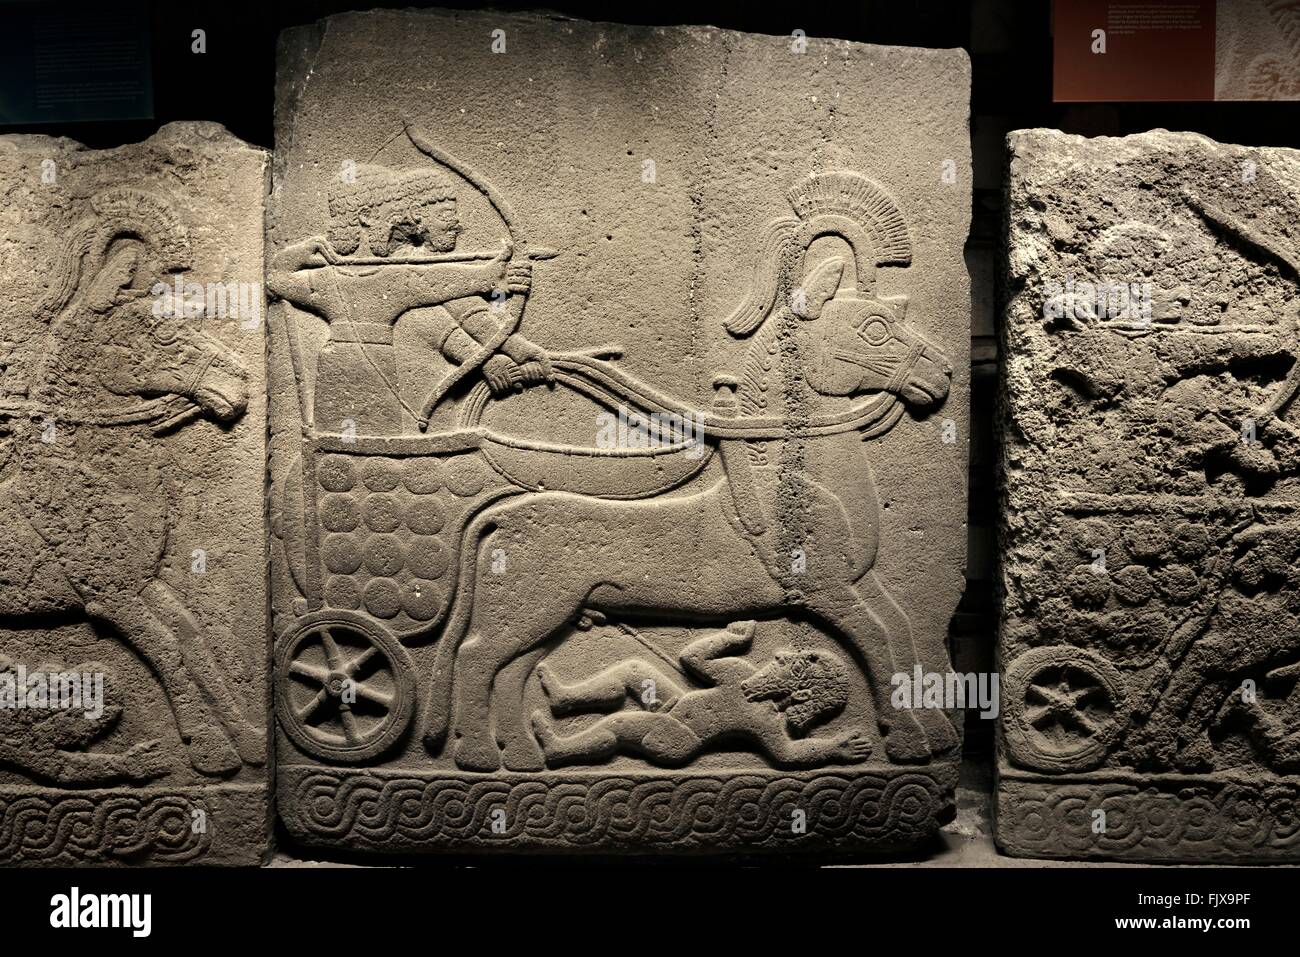 Char de guerre assyriens archer. La sculpture de basalte de Karkemish 8C BC. Musée des civilisations anatoliennes, Ankara, Turquie Banque D'Images